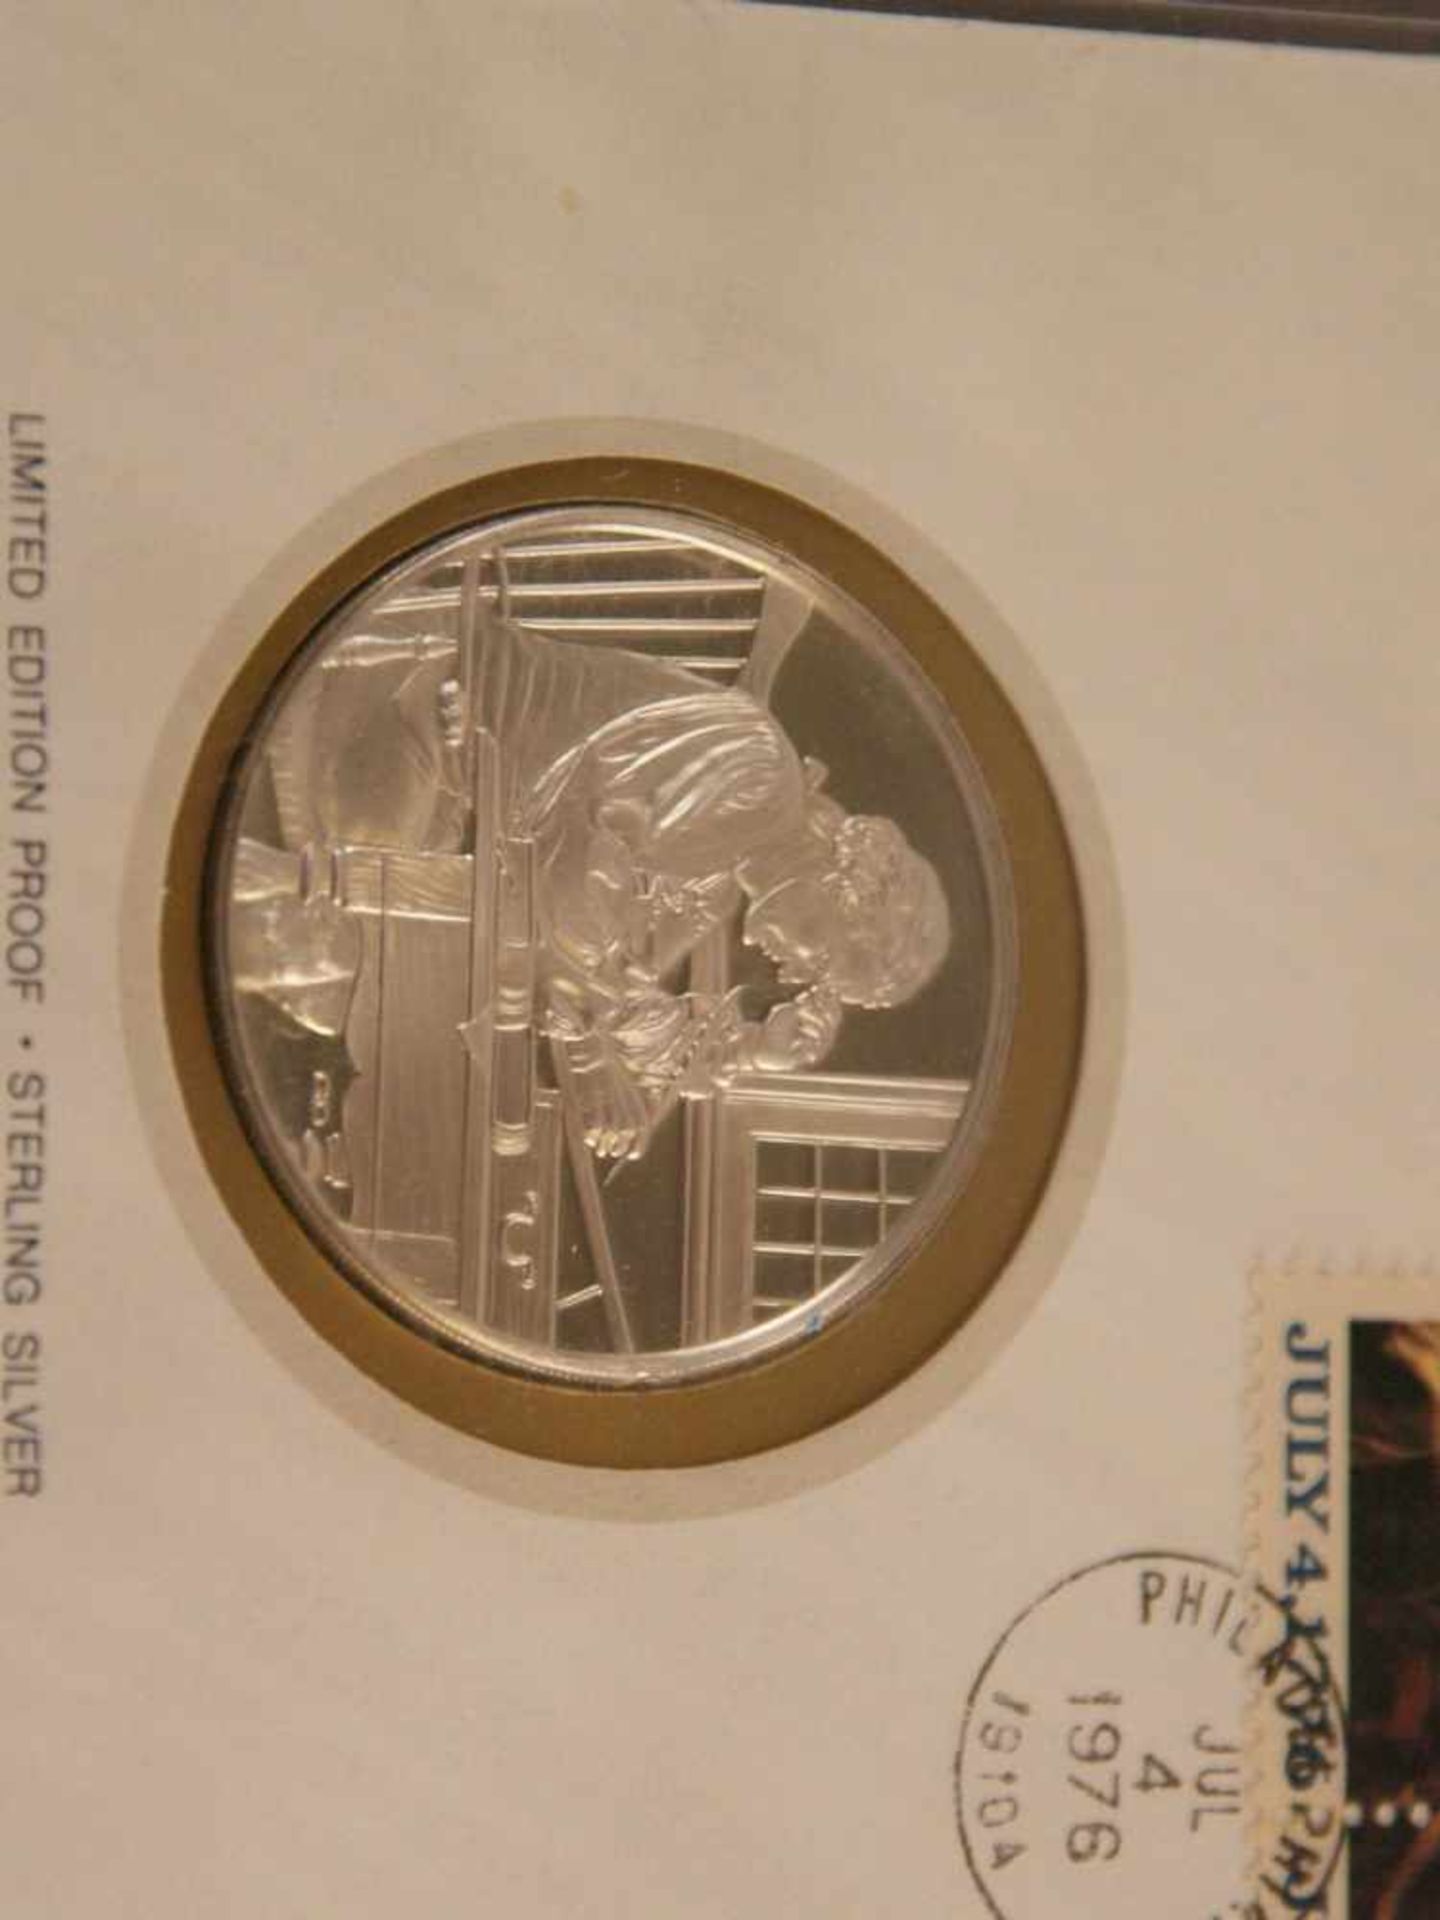 36 Blätter mit Münze "International Society of Postmasters" - unterschiedliche Länder und Motive, - Bild 4 aus 7